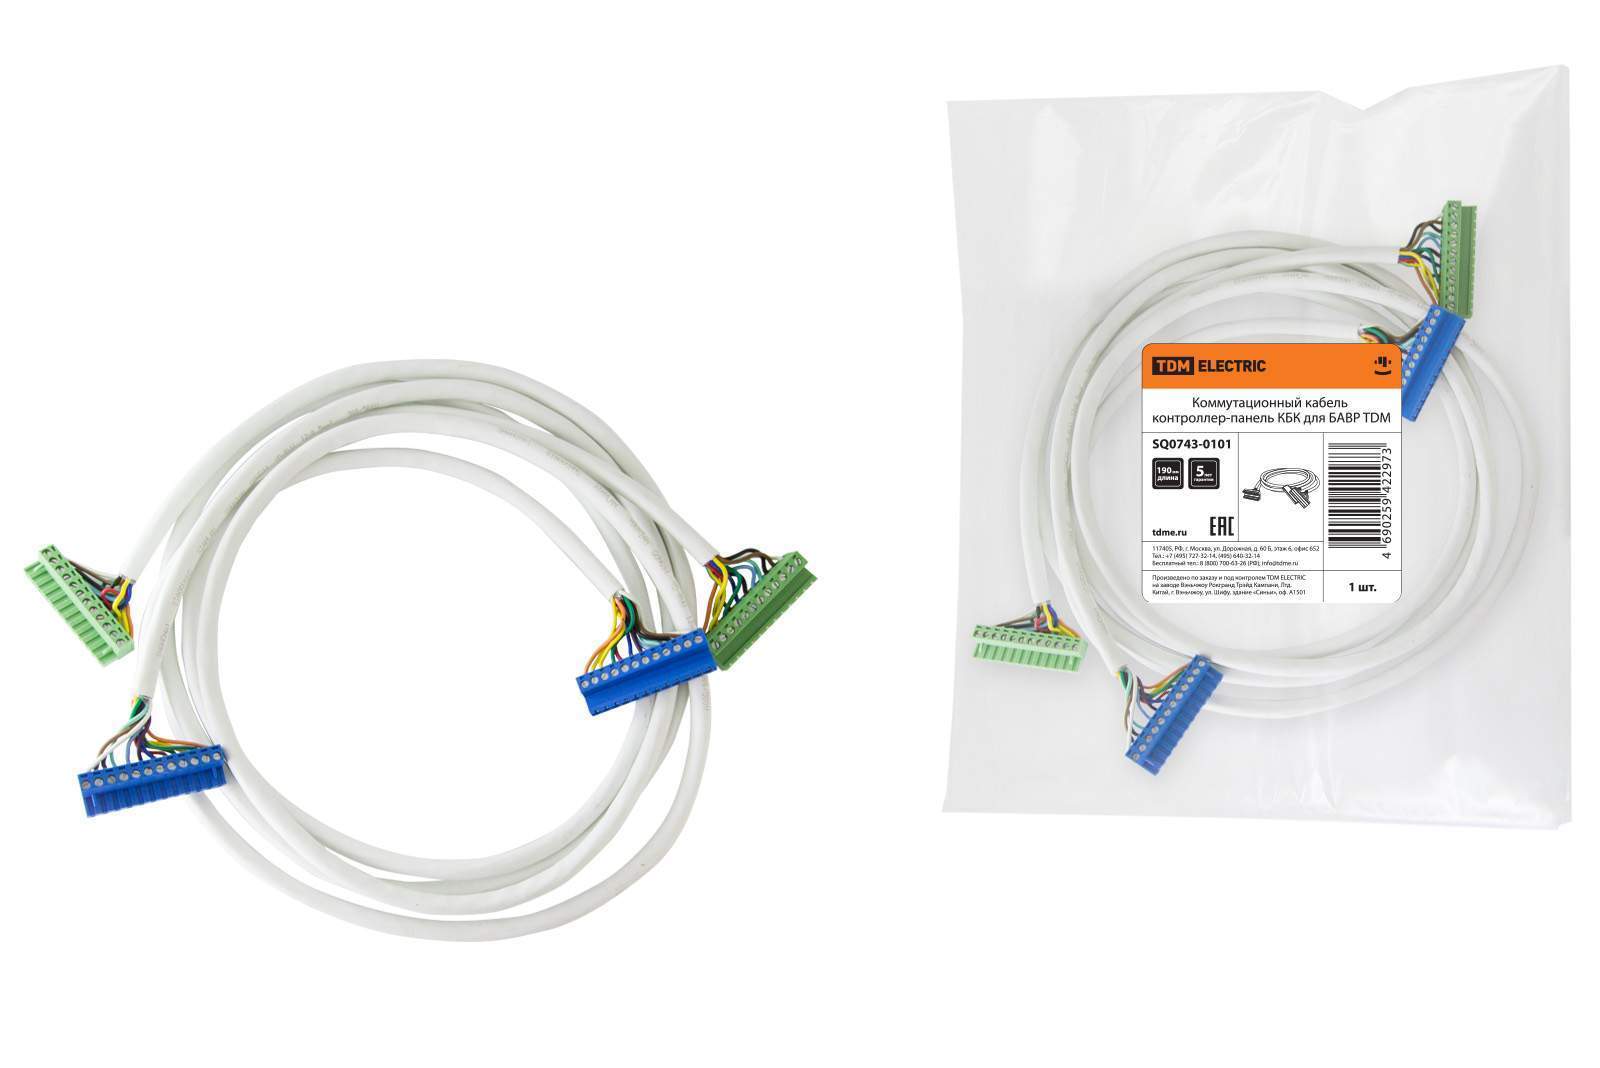 коммутационный кабель контроллер-панель кбк для бавр tdm от BTSprom.by